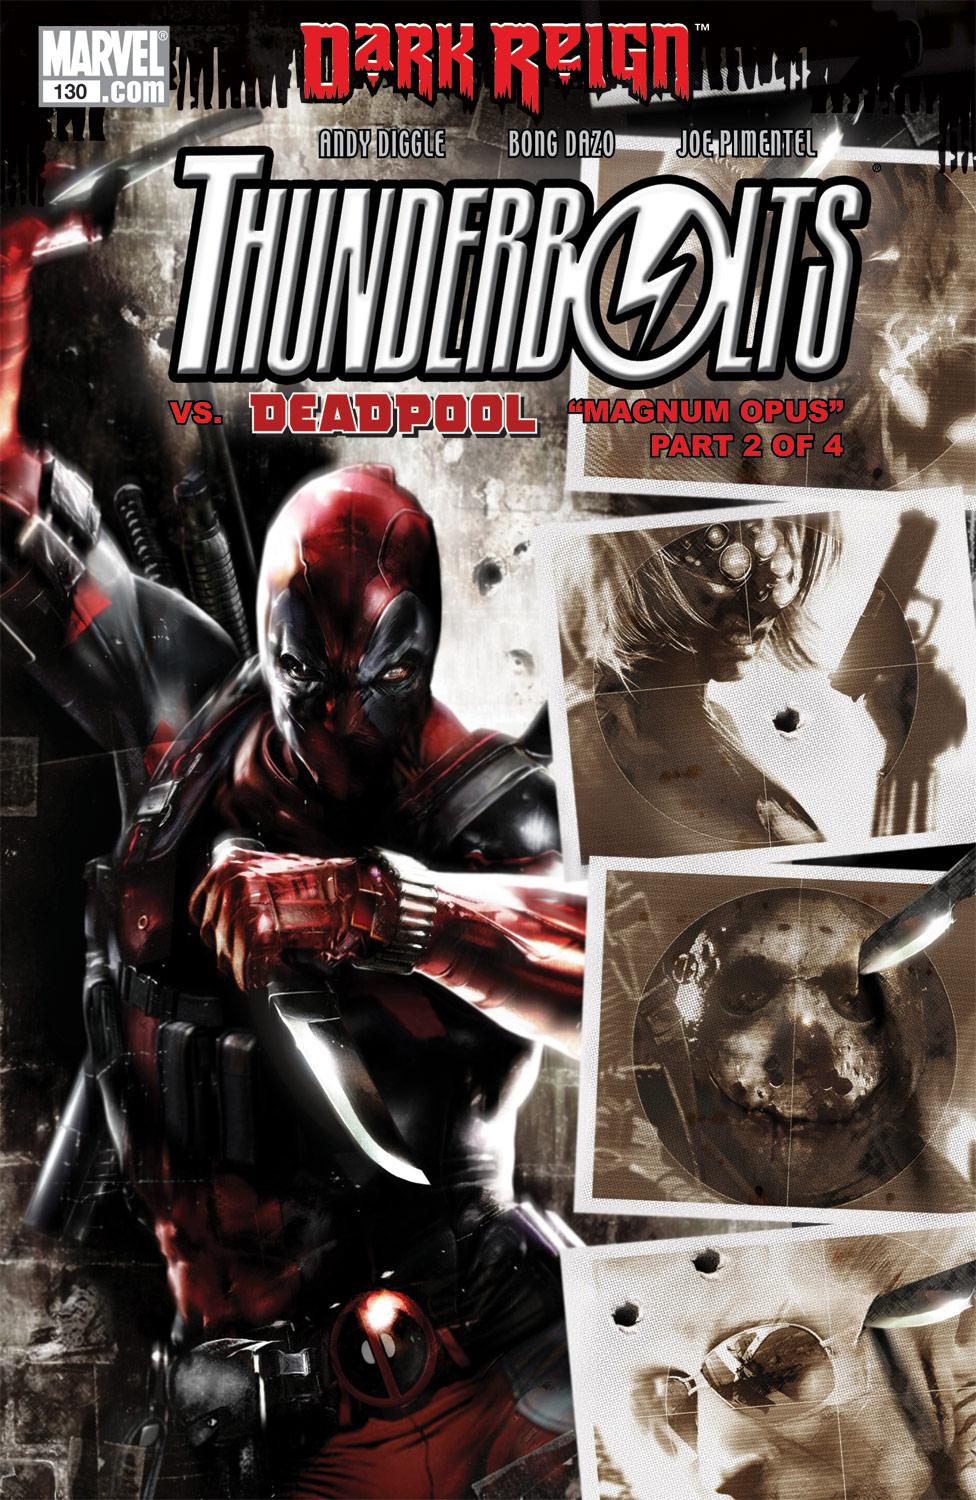 Dark Reign:Deadpool/Thunderbolts (Trade Paperback)